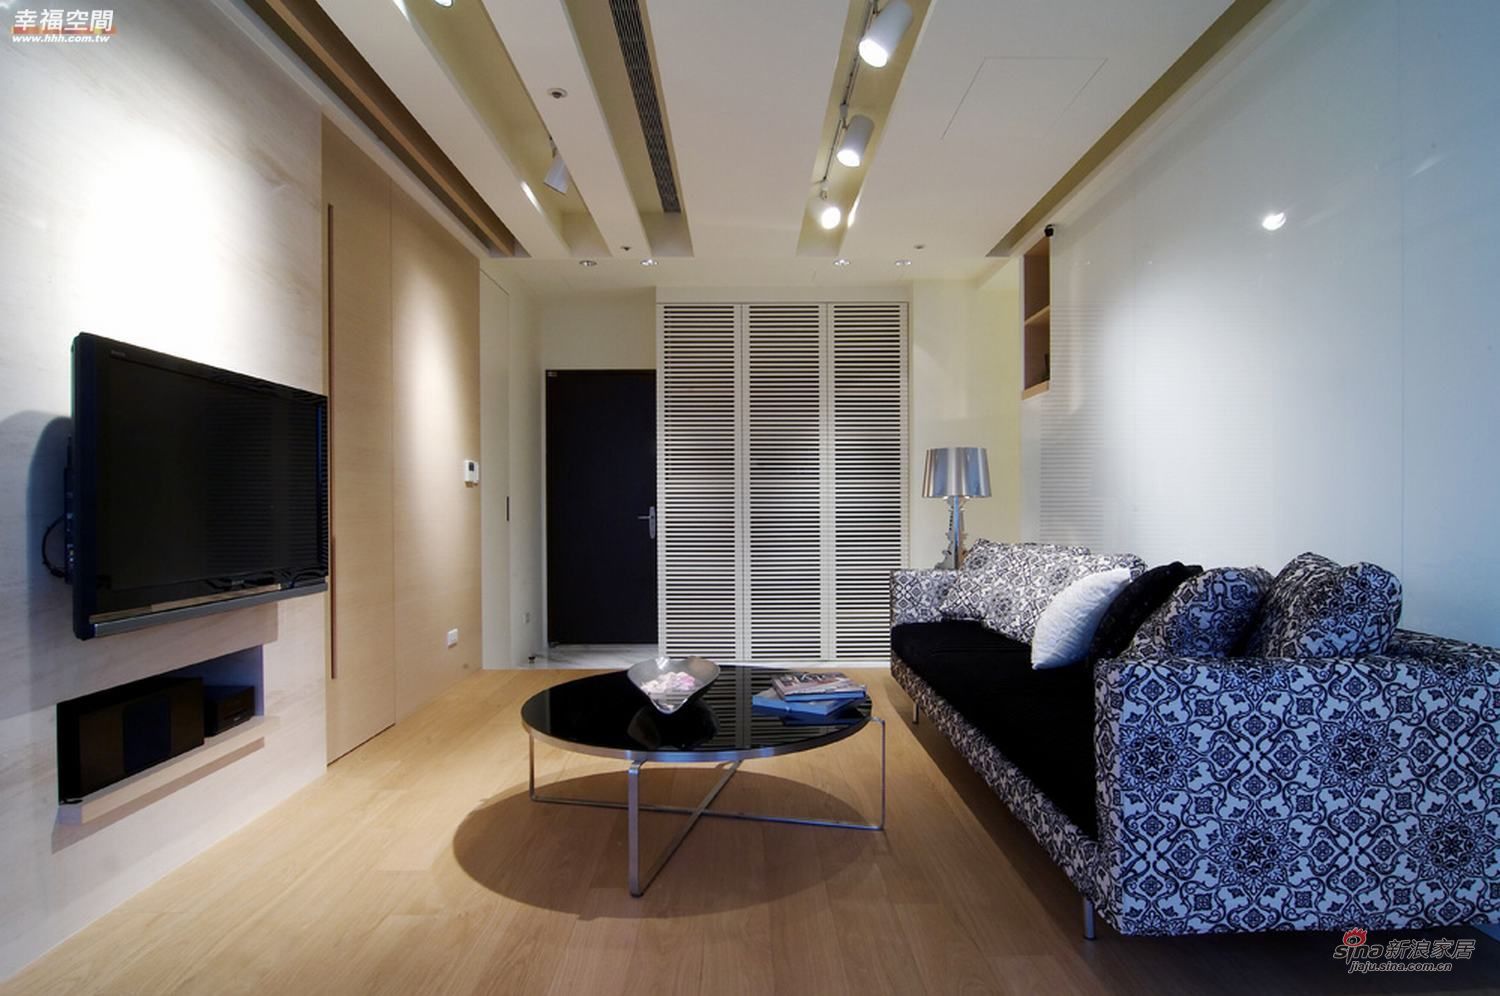 现代 三居 客厅图片来自幸福空间在我的专辑774299的分享